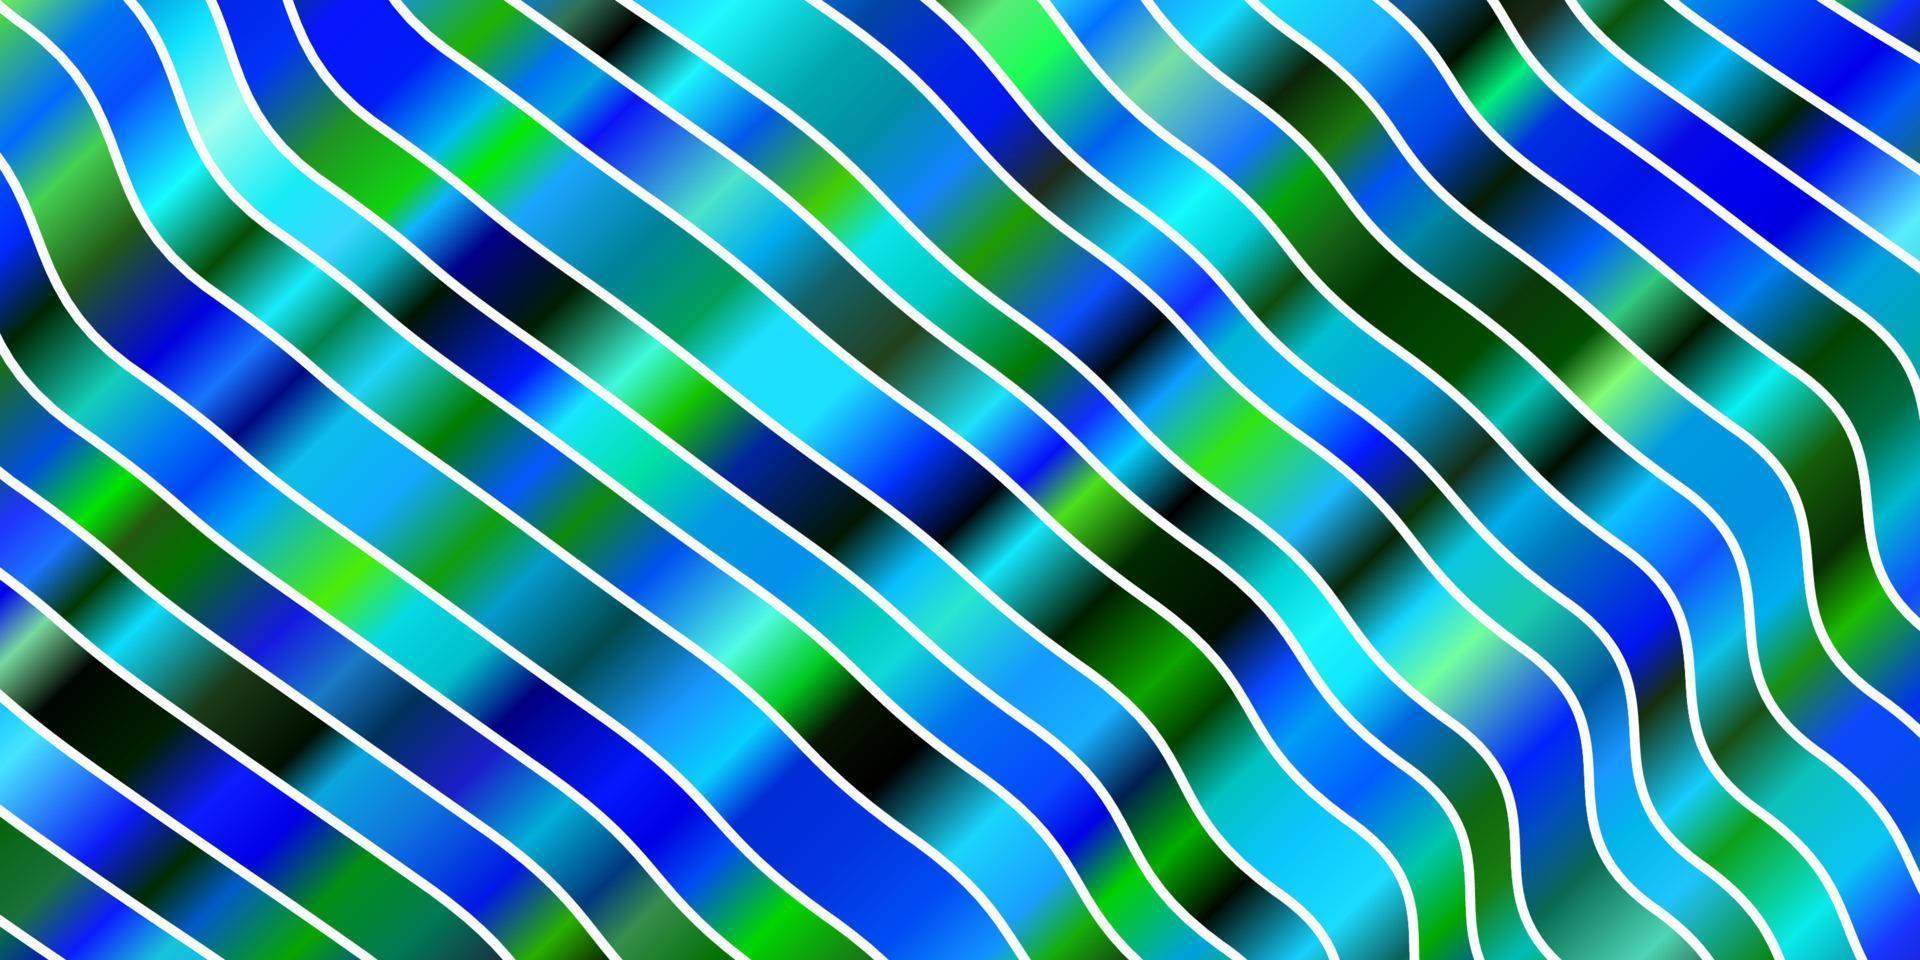 modelo de vetor azul claro e verde com linhas irônicas.